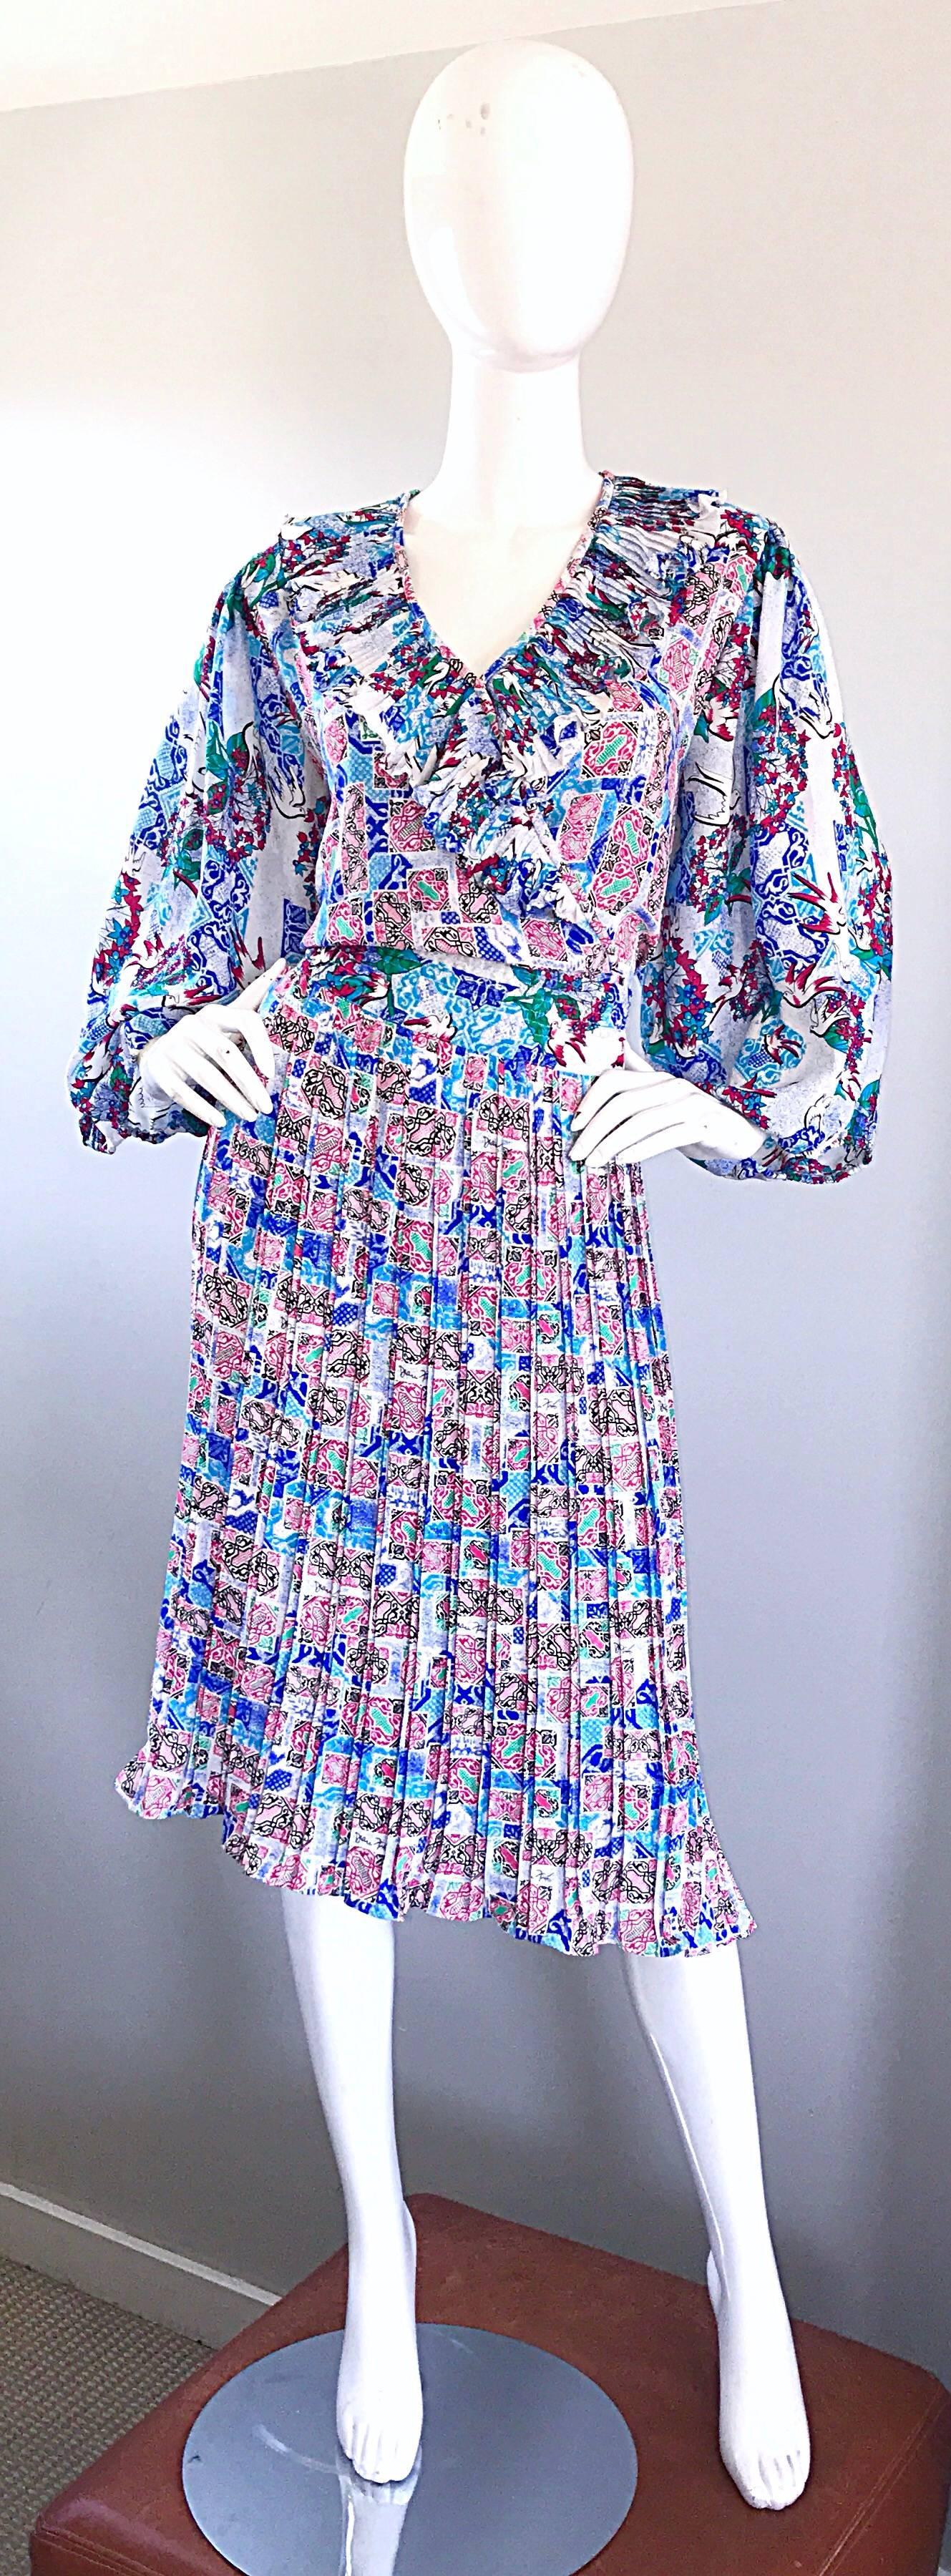 diane freis vintage dresses